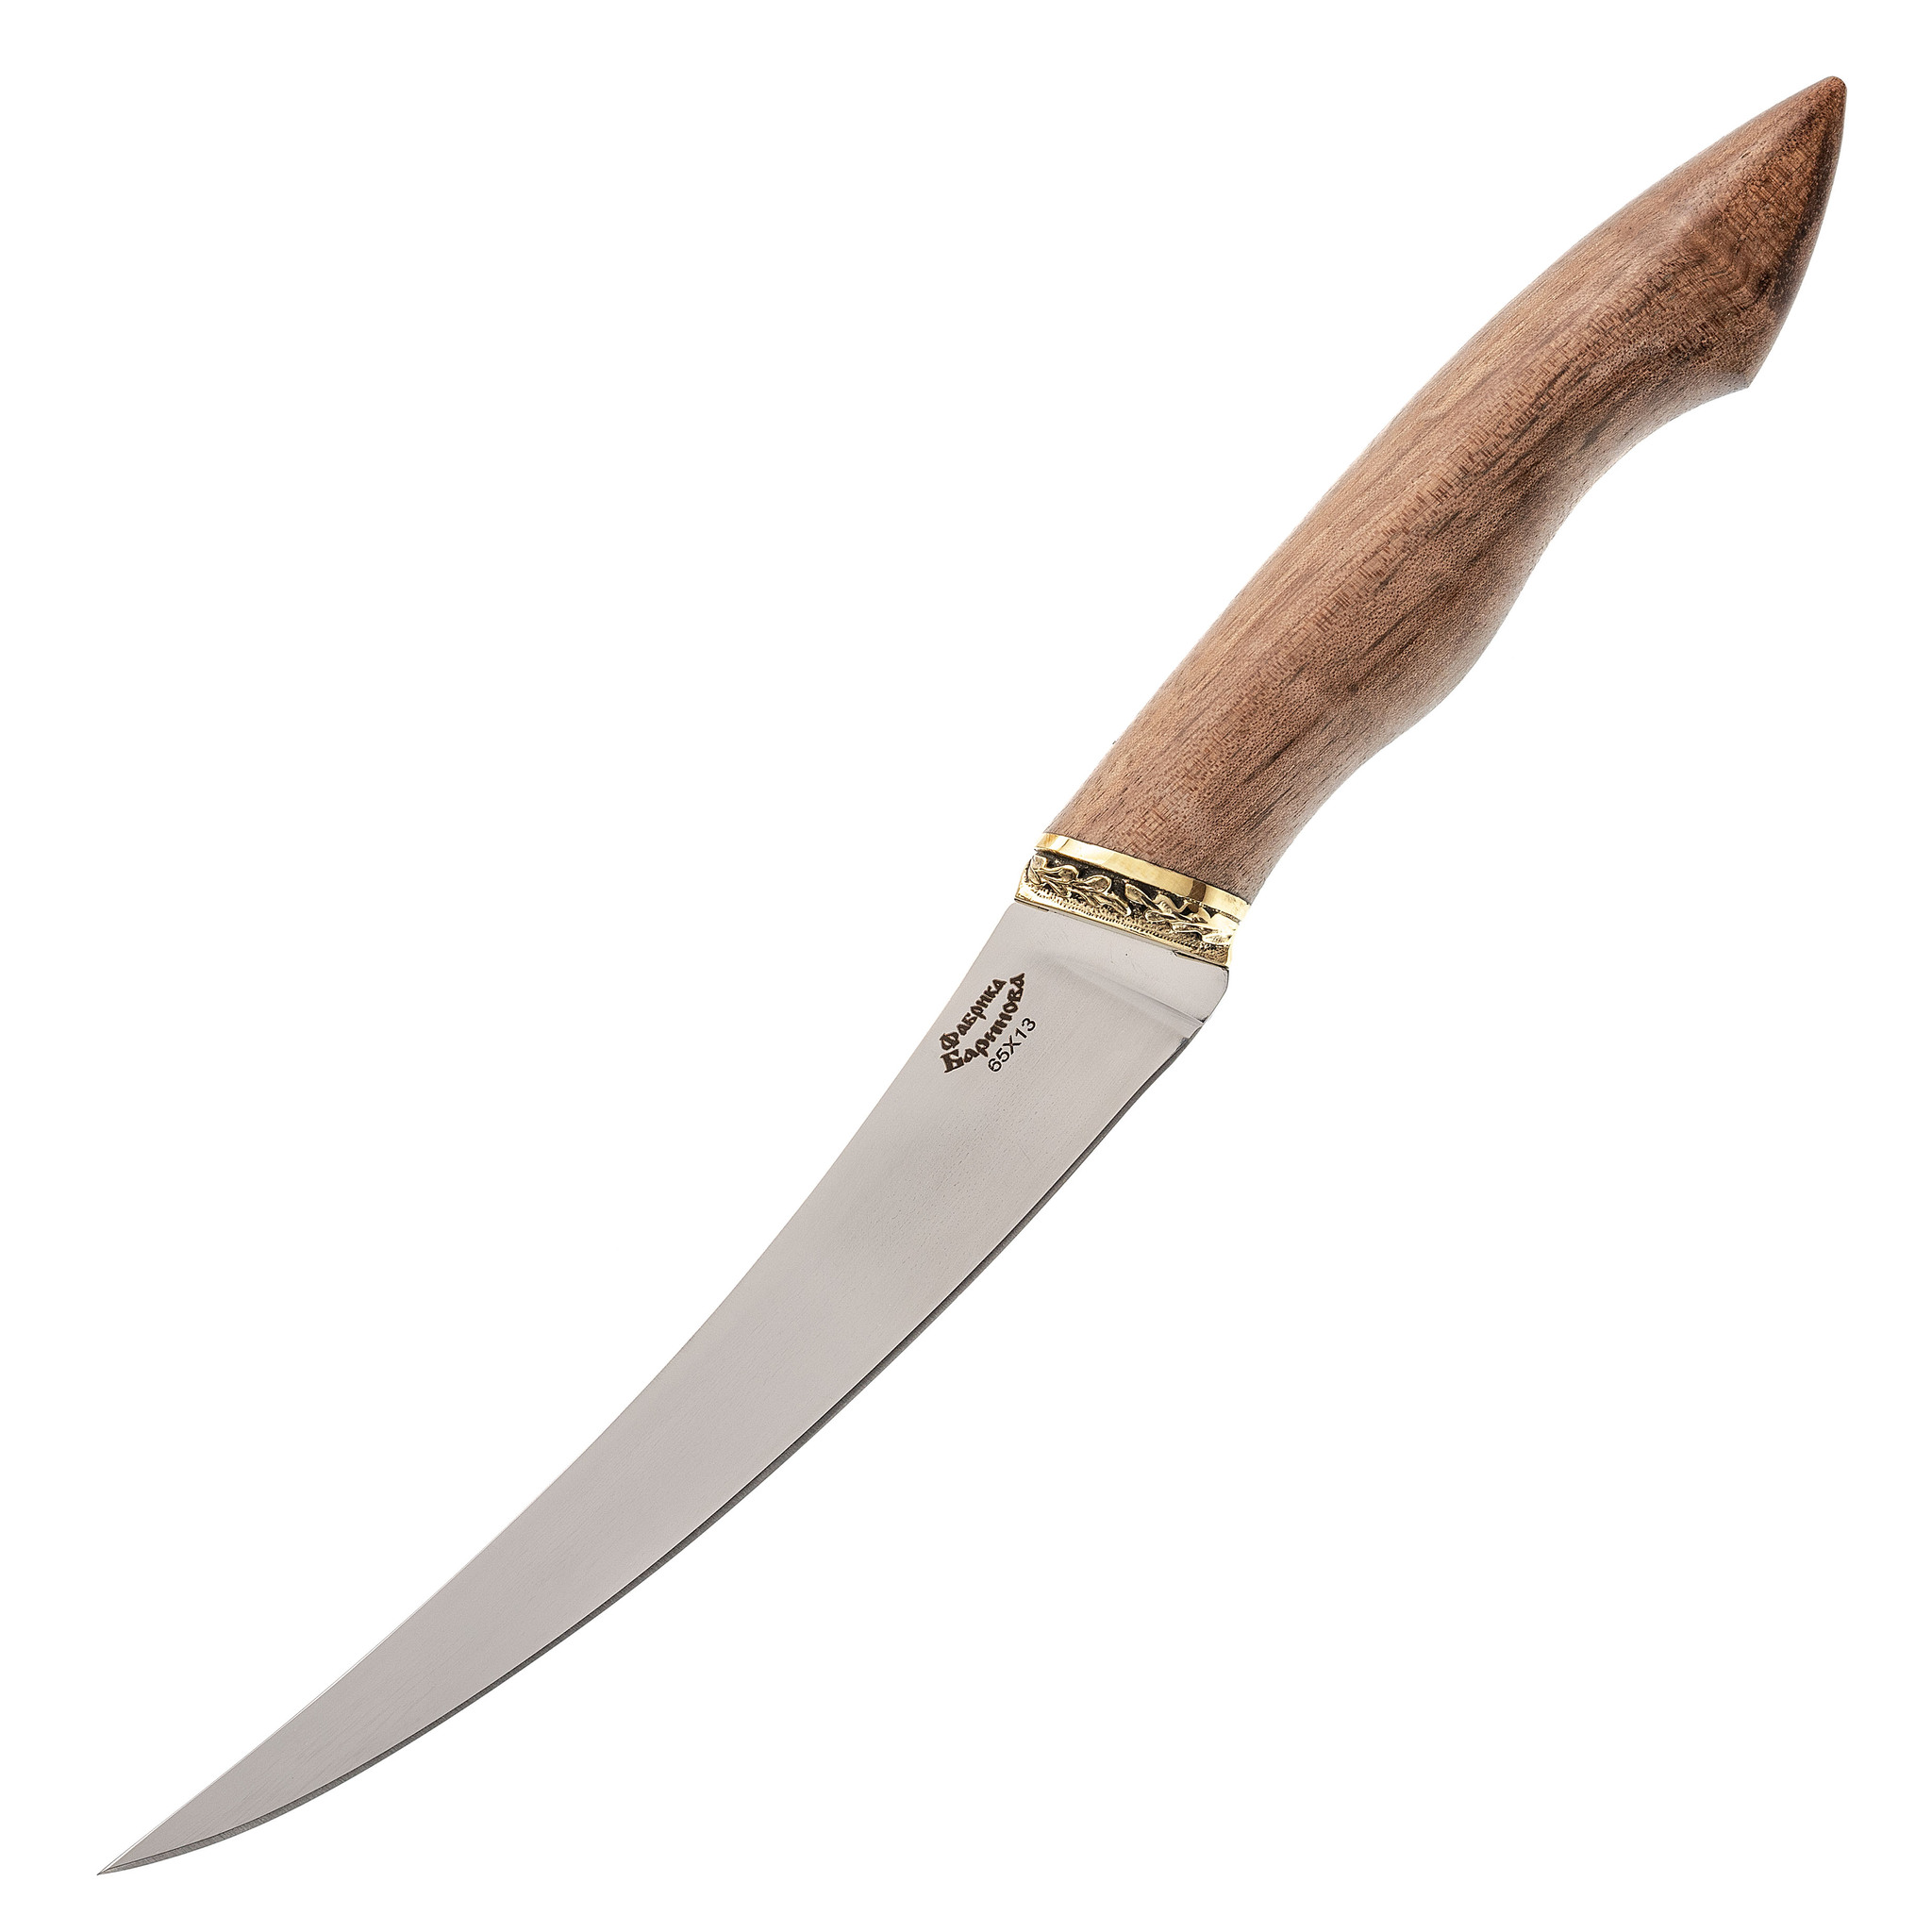 Нож филейный Фин-2, сталь 65х13, рукоять орех, Для рыбы, Ножи филейные